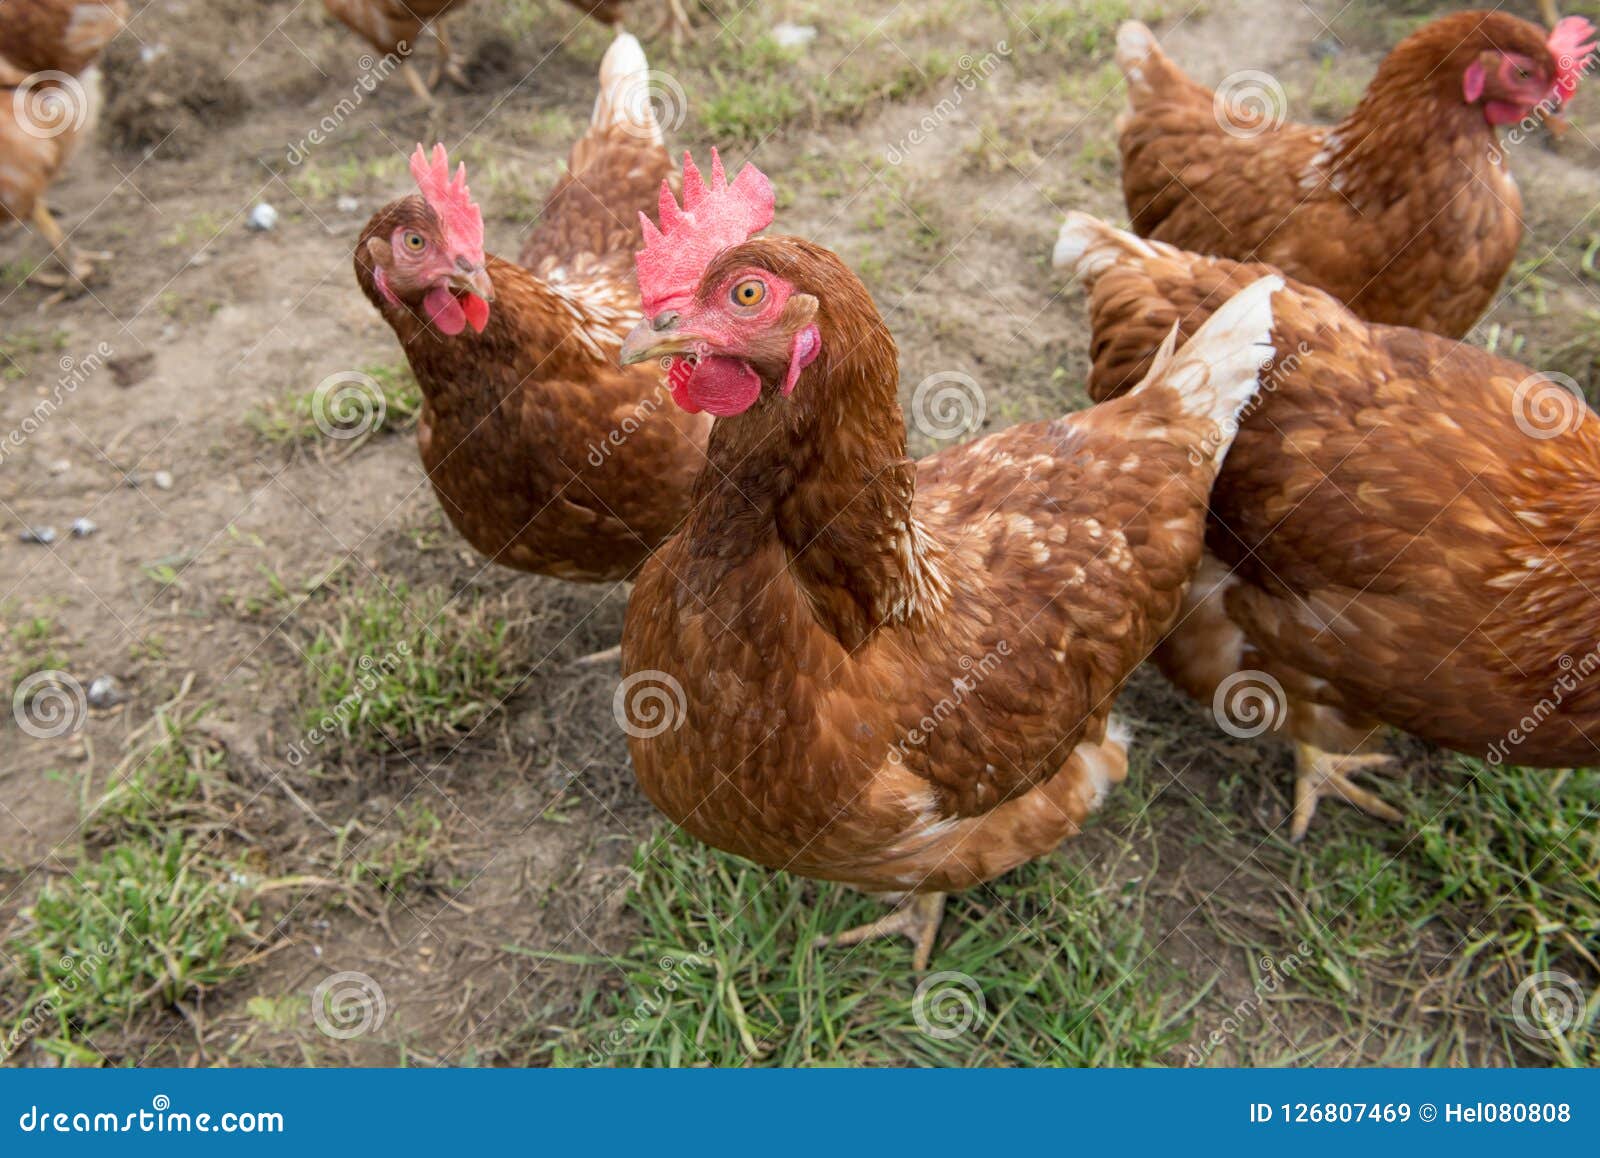 Verenigen Geweldige eik in de buurt Bruine kippen in boerenerf stock afbeelding. Image of landbouw - 126807469